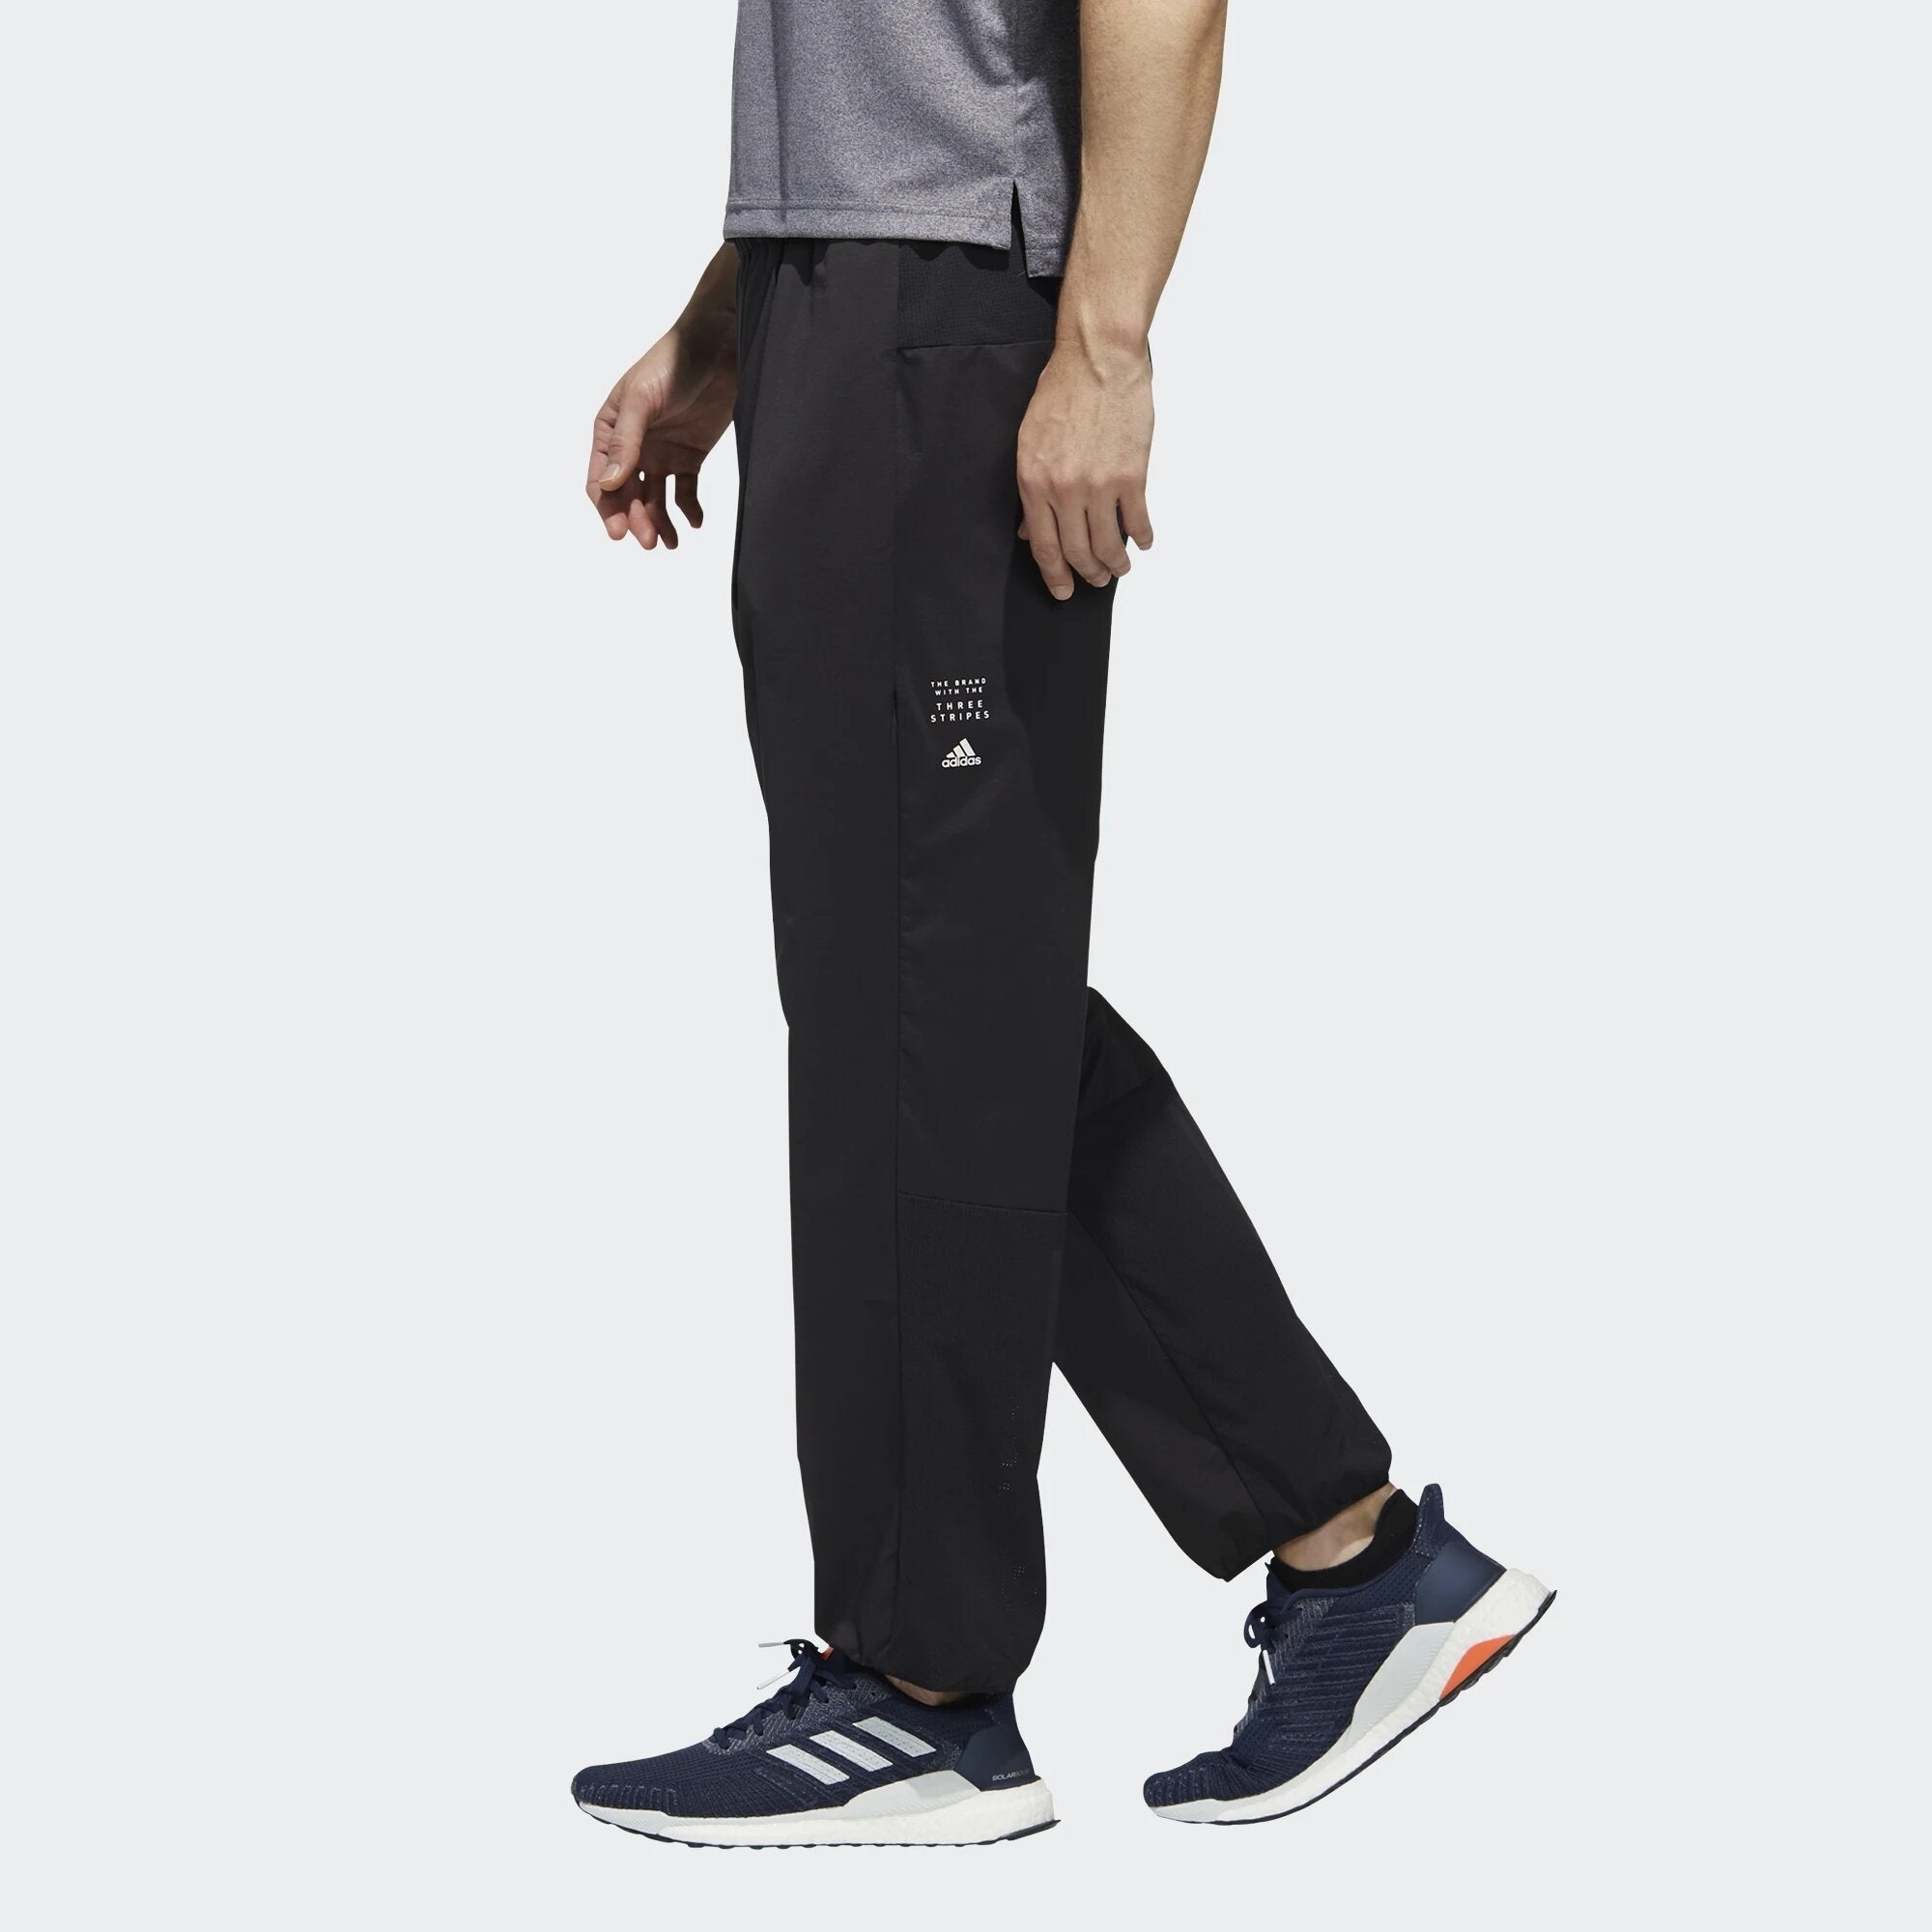 Pantalon survêtement Adidas Must Haves - Noir